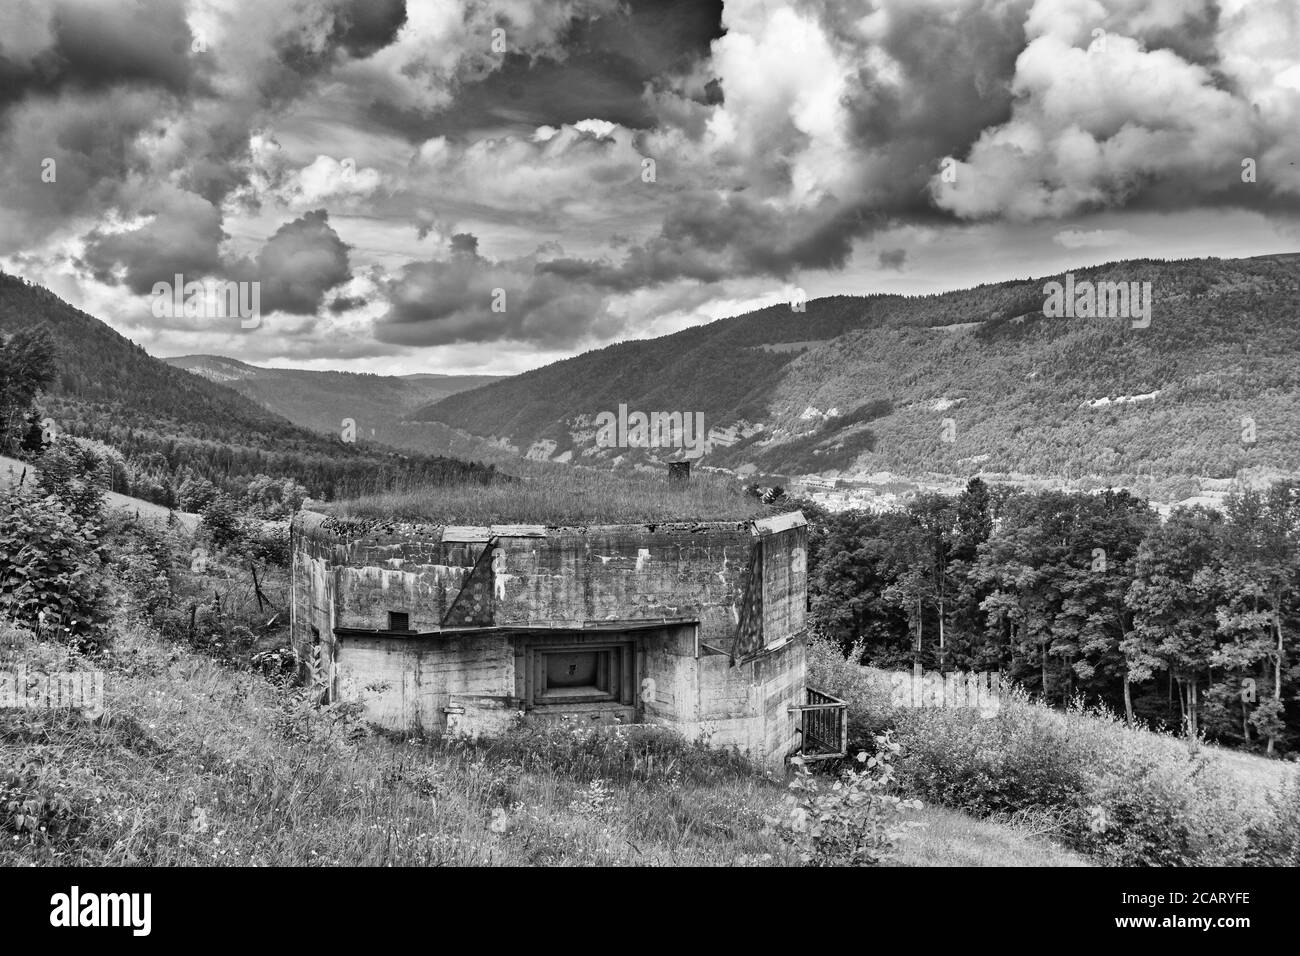 Schweiz, Kanton Waadt, Vallorbe, Festung des Zweiten Weltkriegs und Artillerie Lage mit Blick auf die französische Grenze, Artillerie Blockhaus Stockfoto